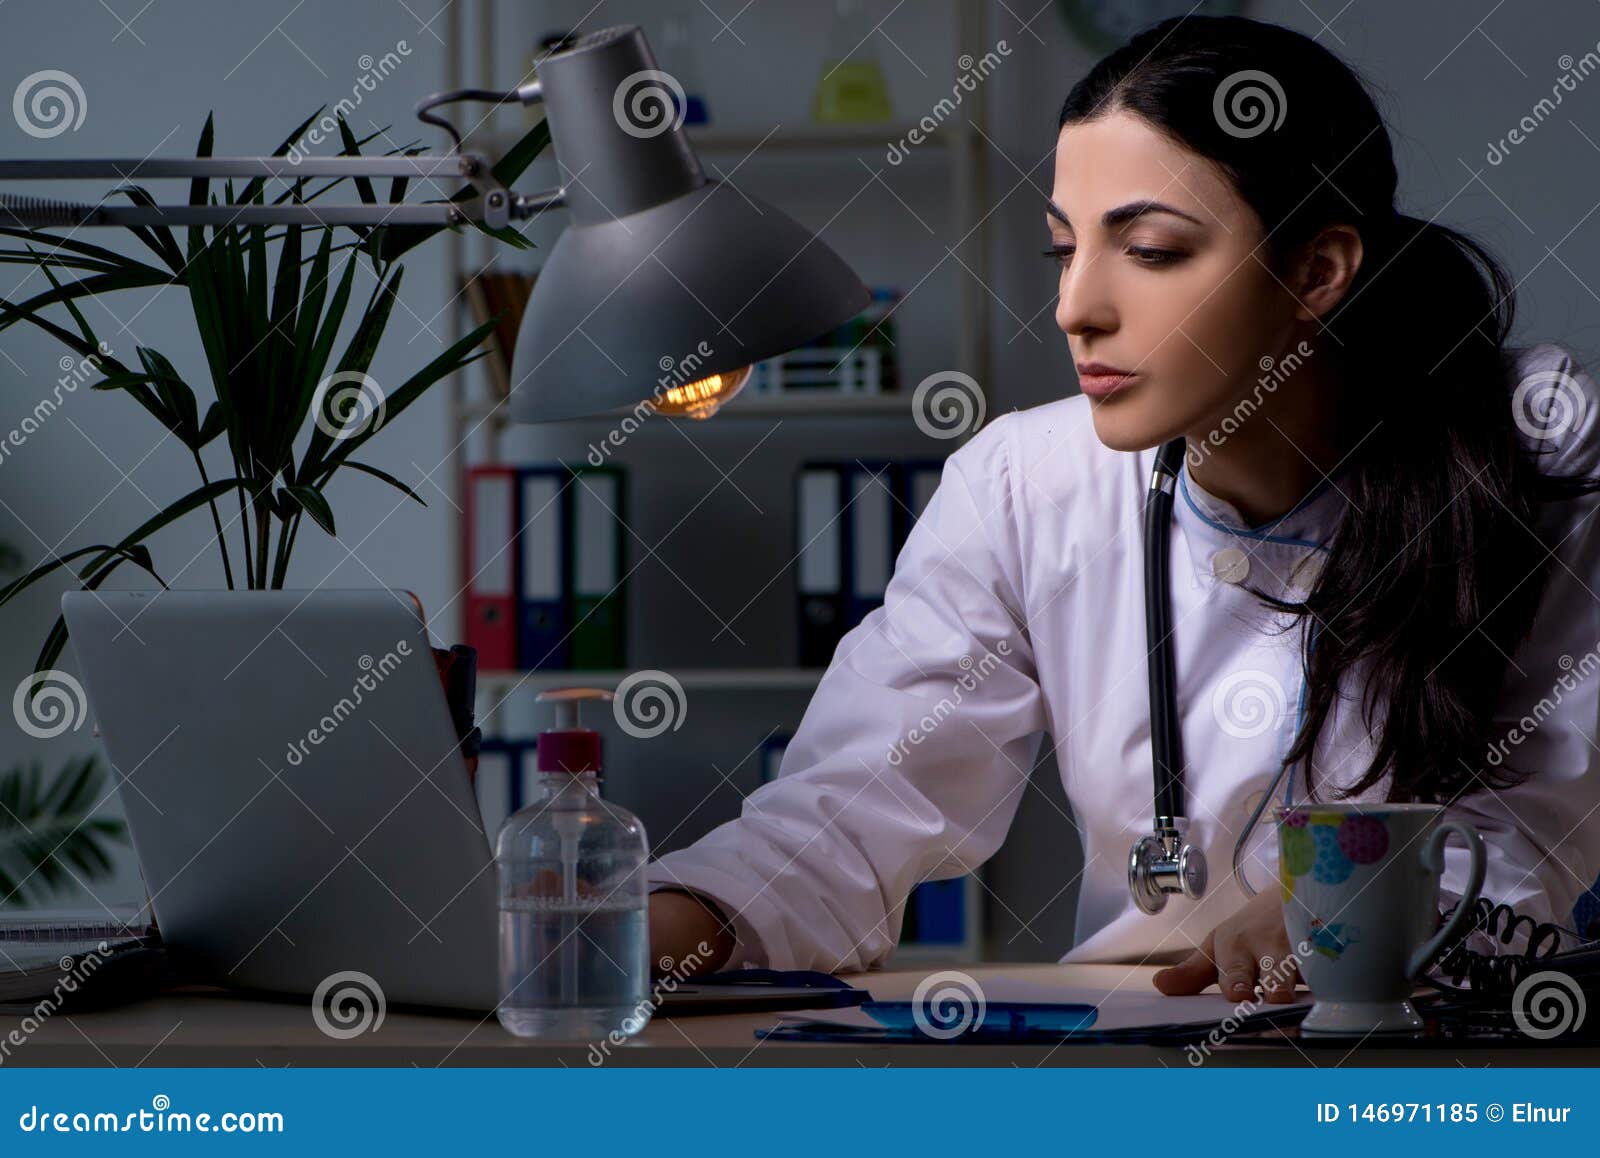 Doctor work it out. Девушка врач. Женщина врач работает ночью. Фото уставшего врача женщины.